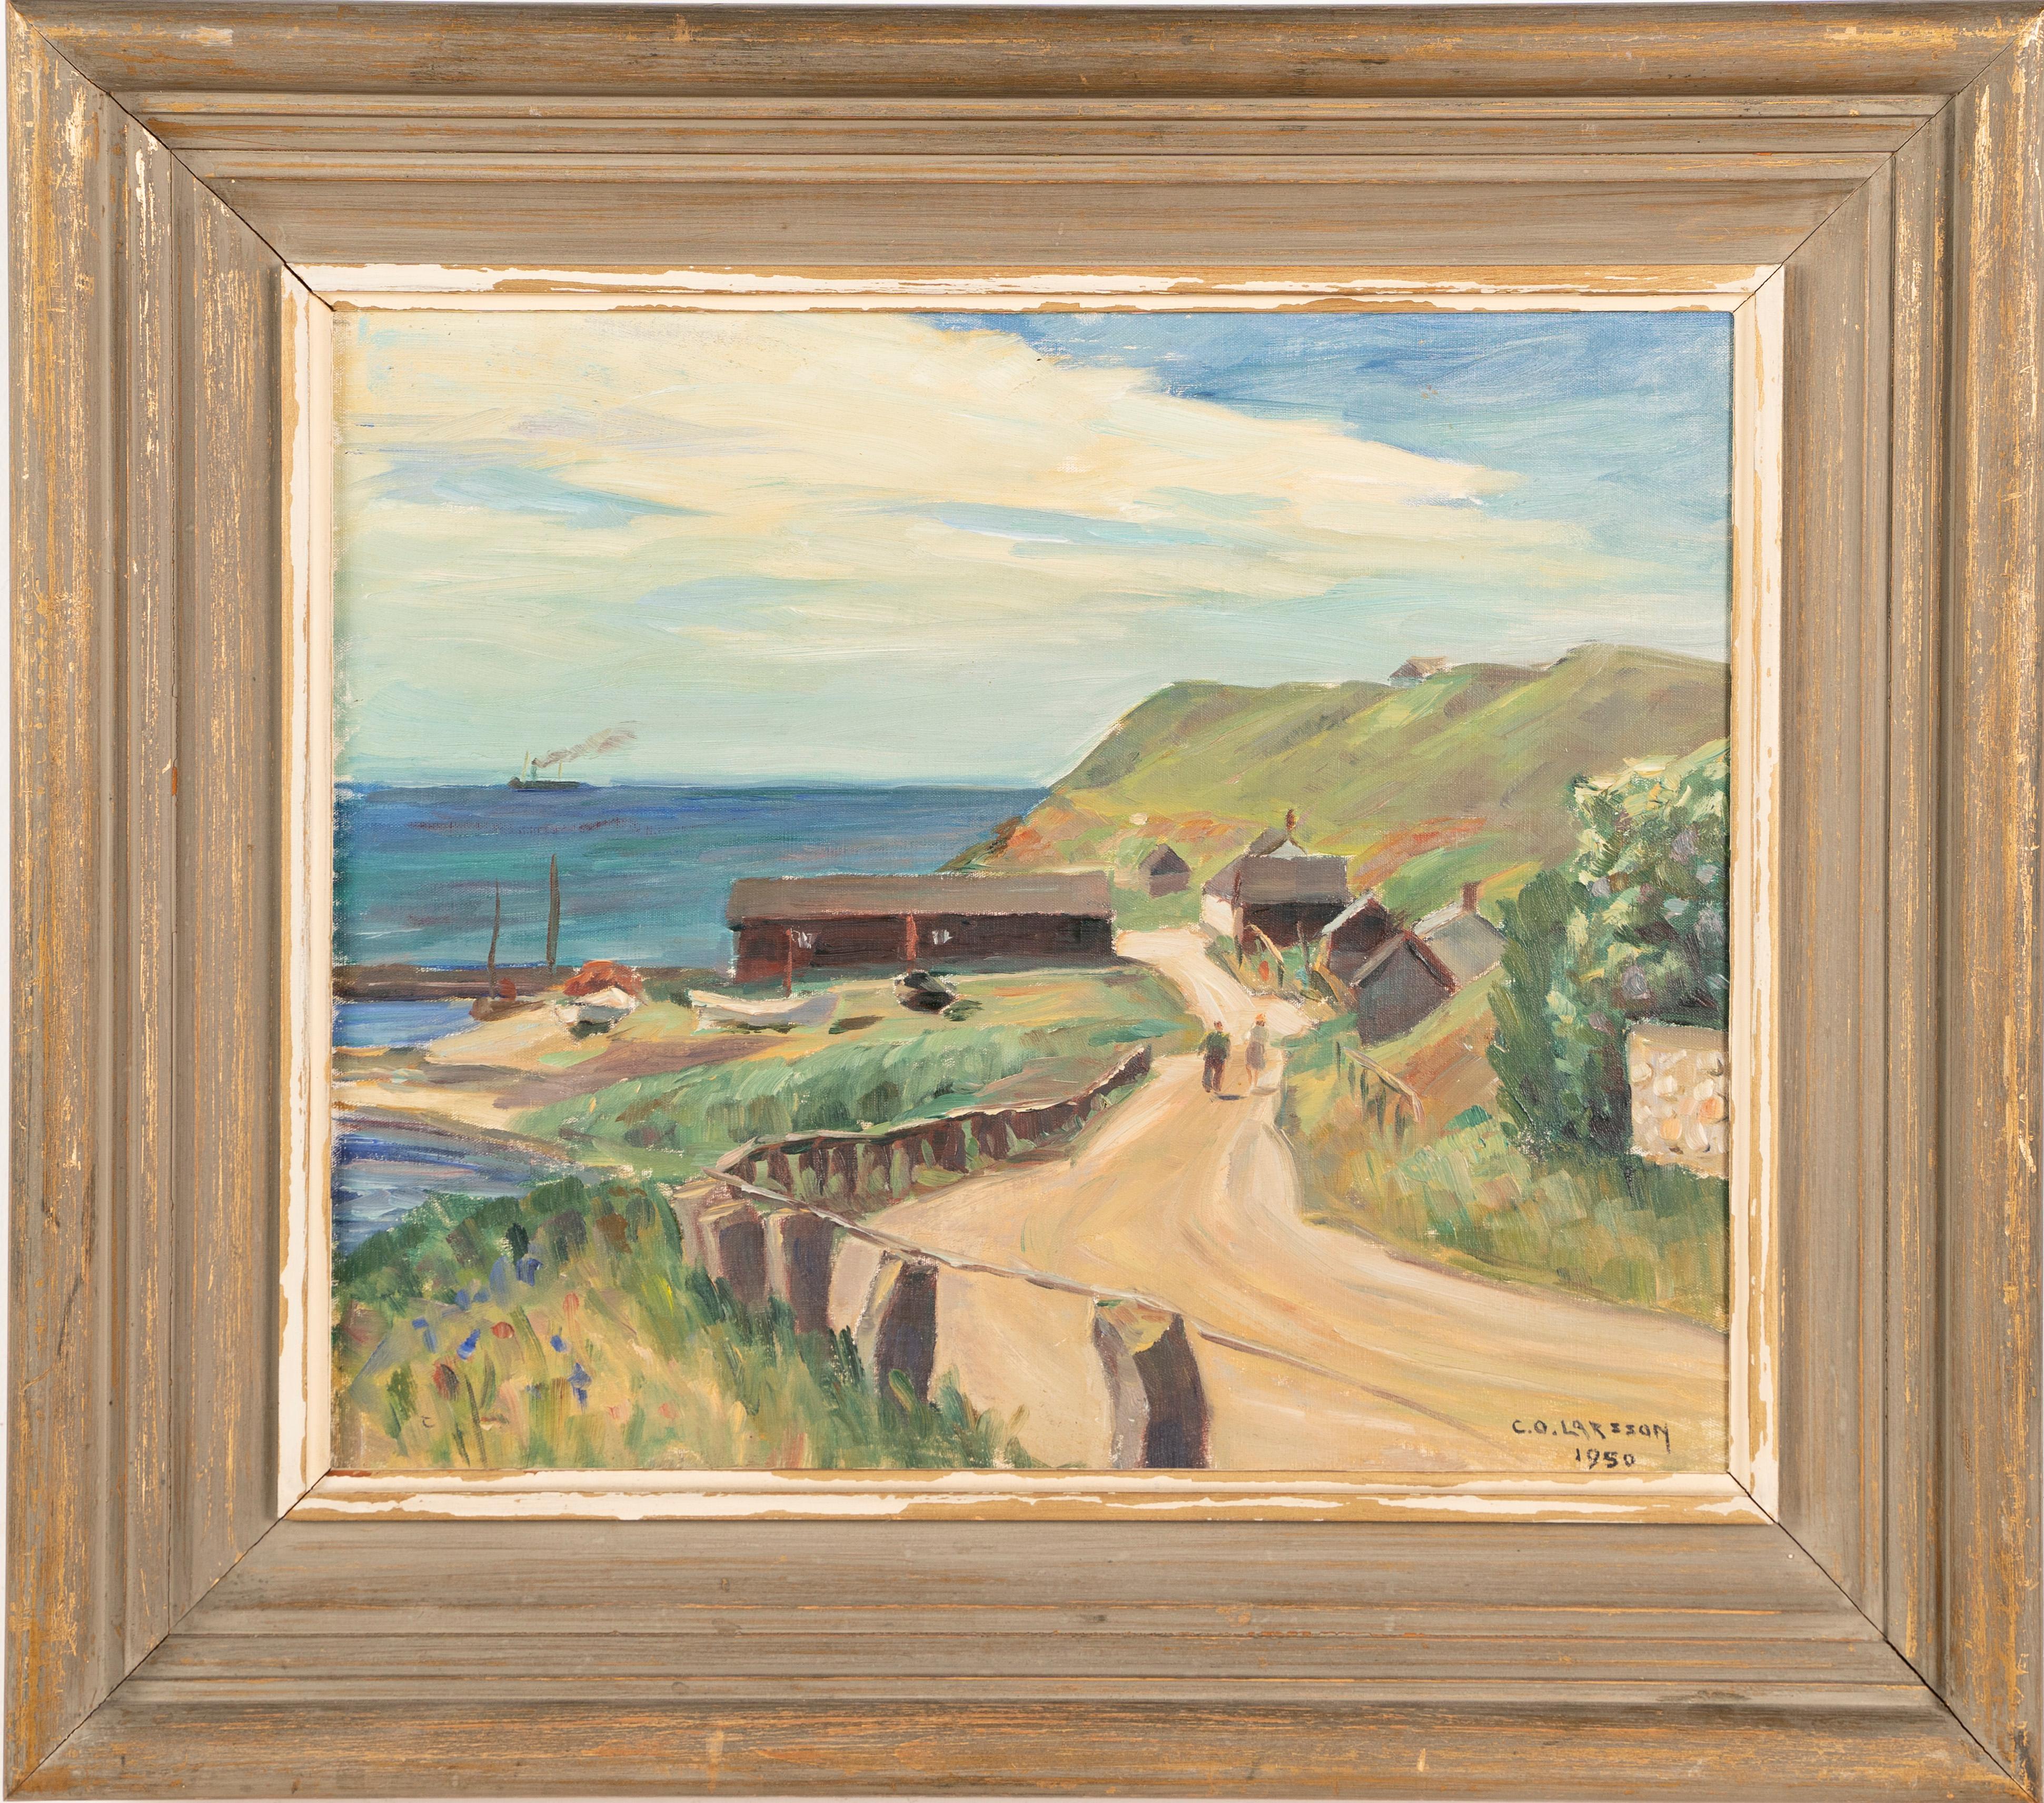 Vintage Signed Framed Swedish Coastal Fishing Seascape Original Oil Painting - Brown Landscape Painting by Carl Oskar Larsson